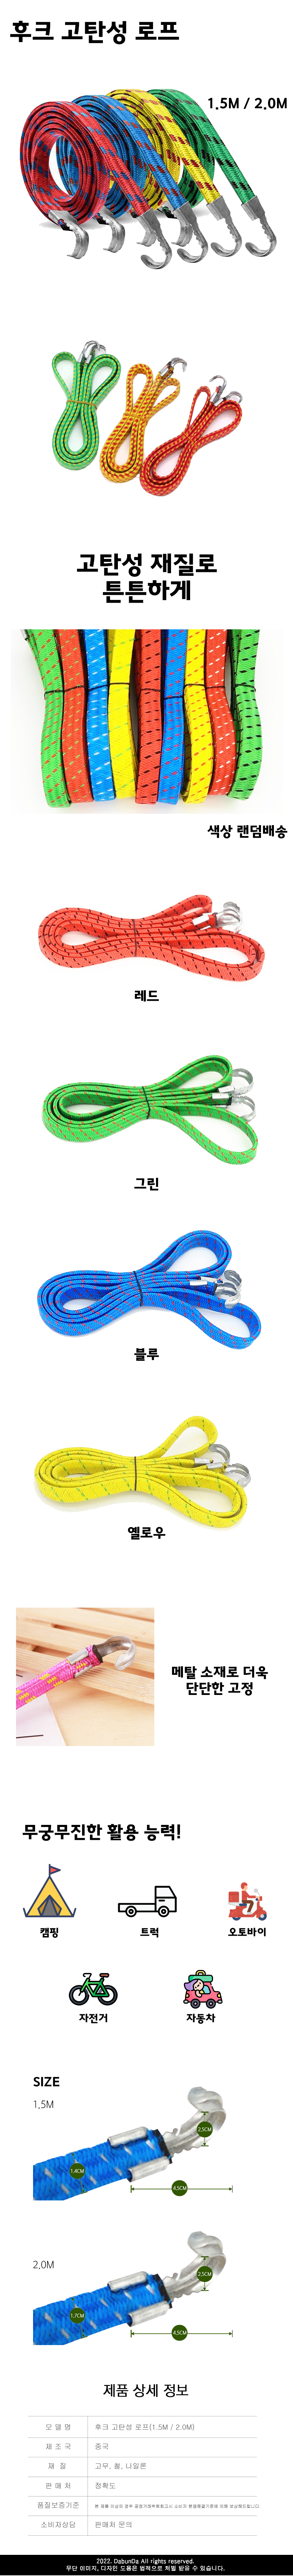 hook elastic rope.jpg